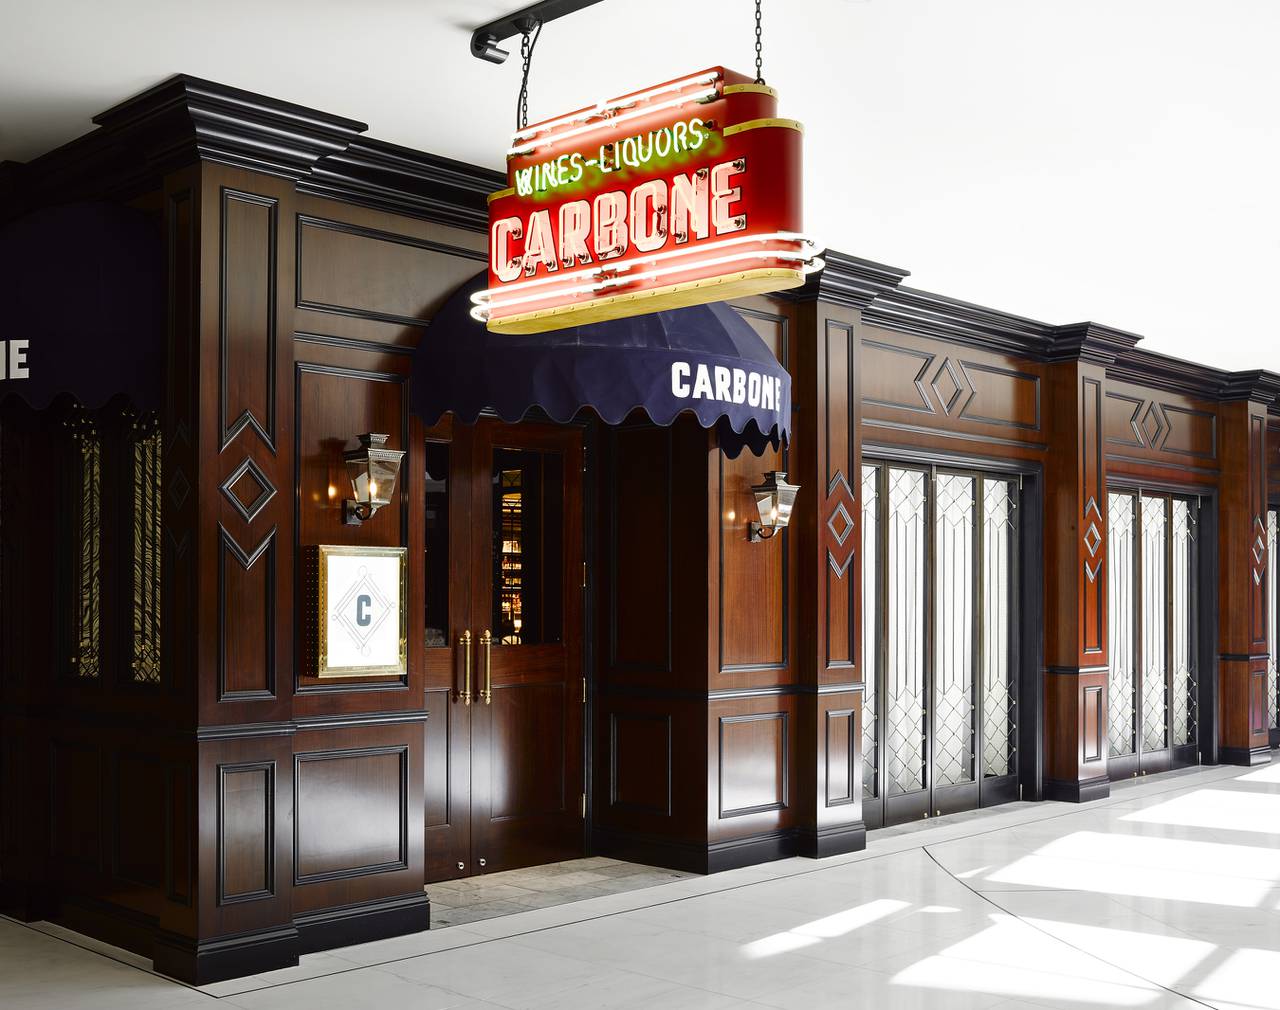 Carbone Las Vegas  Review - Travel Fanboy